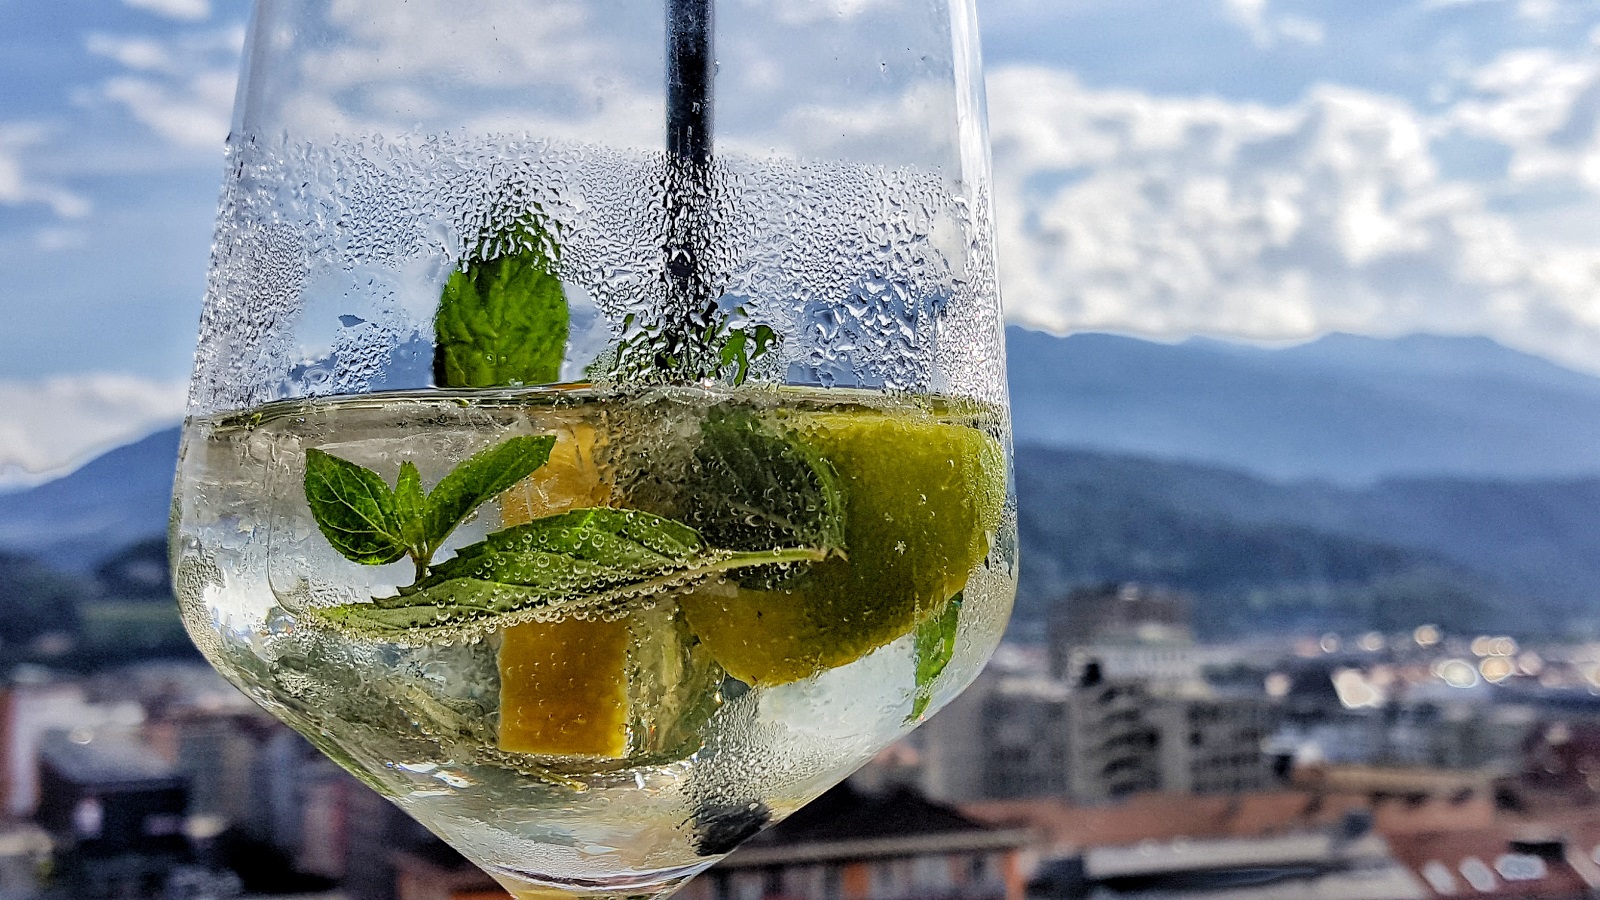 Co pić w Austrii latem?  5 najbardziej orzeźwiających drinków z alko i bez